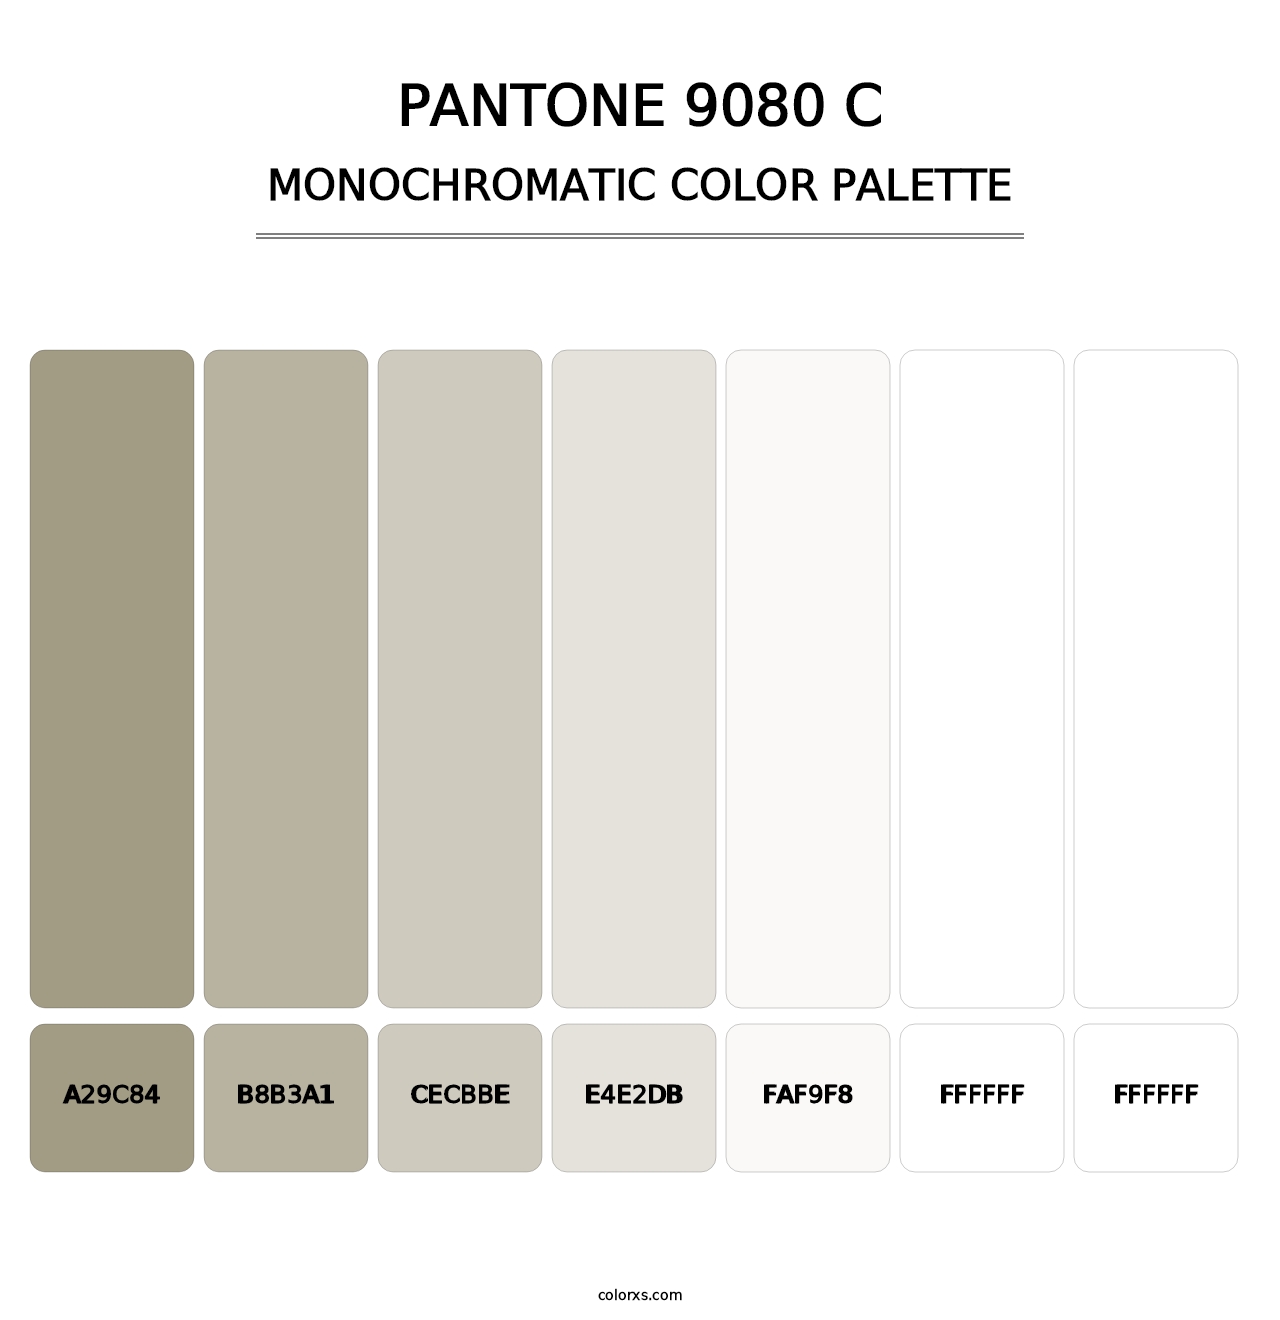 PANTONE 9080 C - Monochromatic Color Palette